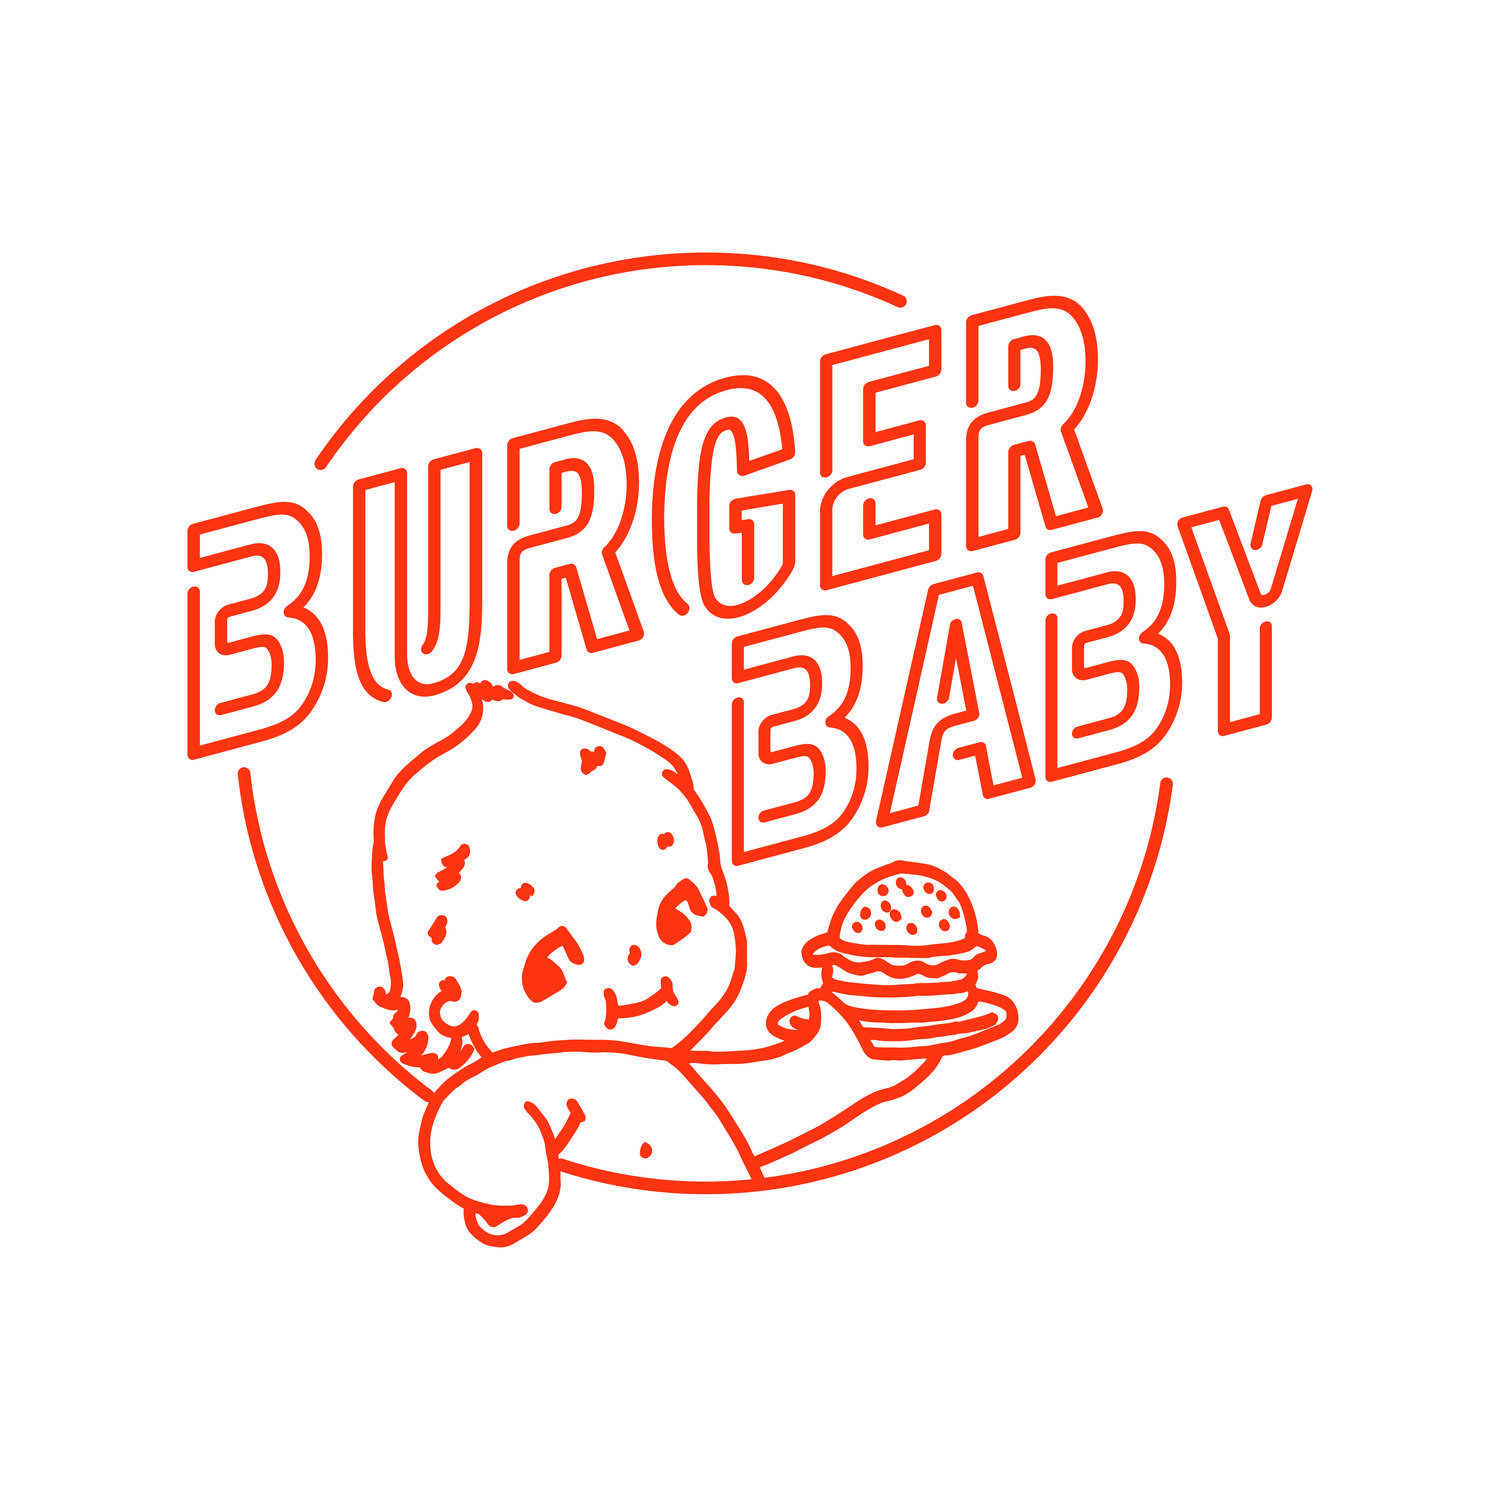 Baby in Circle Logo - Burger Baby Margaret River